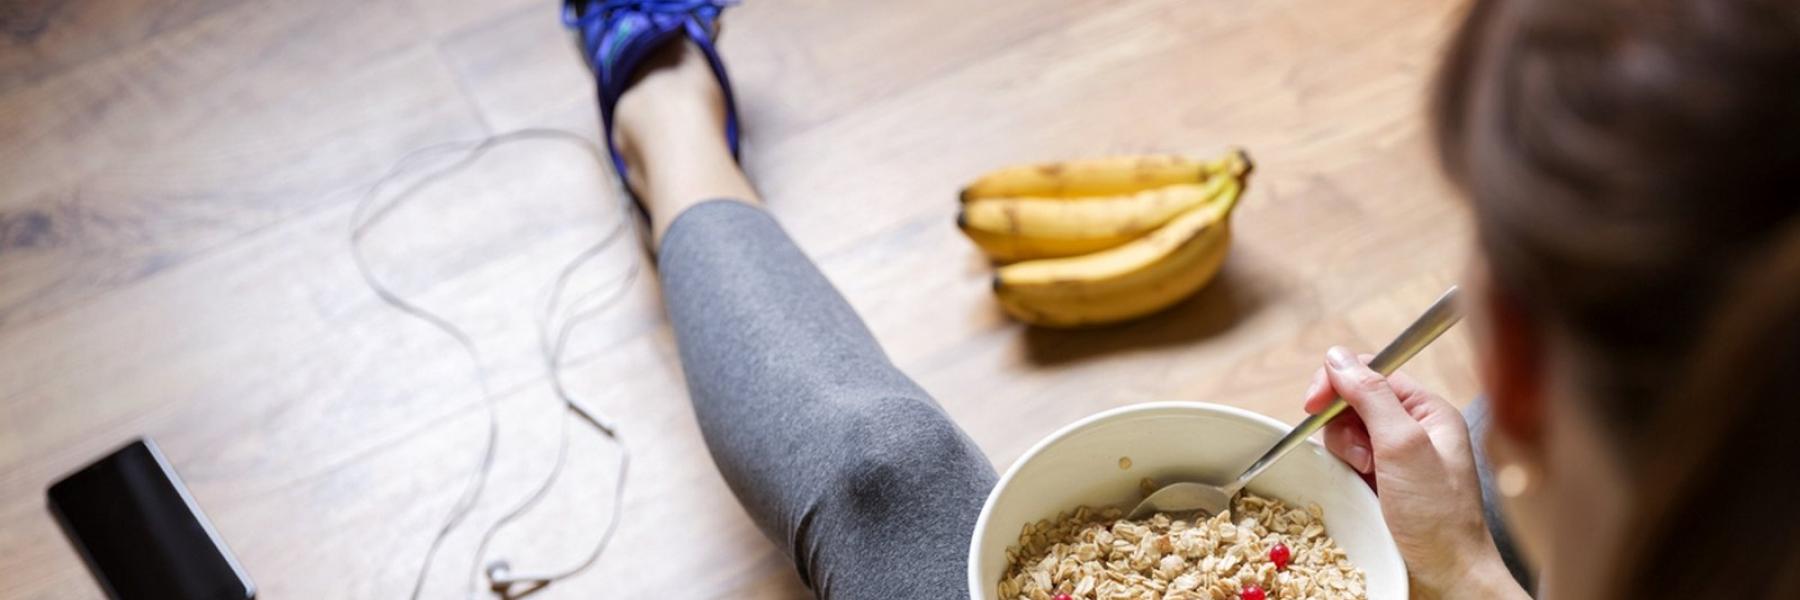 هل تناول الموز بعد التمرين يساعد في تعافي العضلات بشكل أسرع؟